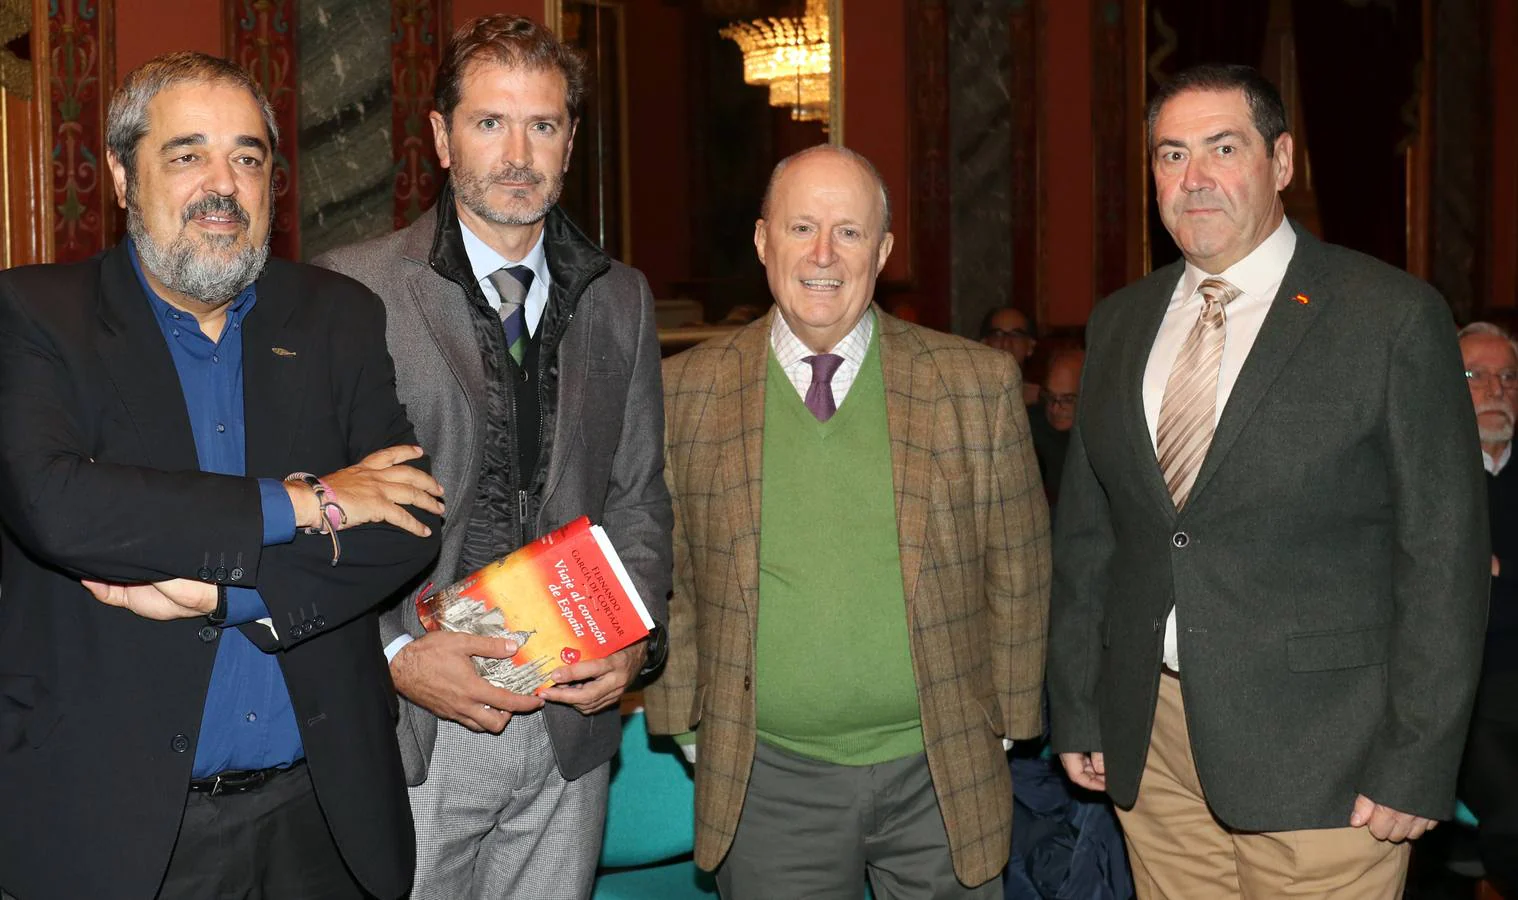 El historiador y jesuita ofreció una conferencia sobre su último libro, 'Viaje al corazón de España' en el Salón del Trono del Palacio Real de Valladolid